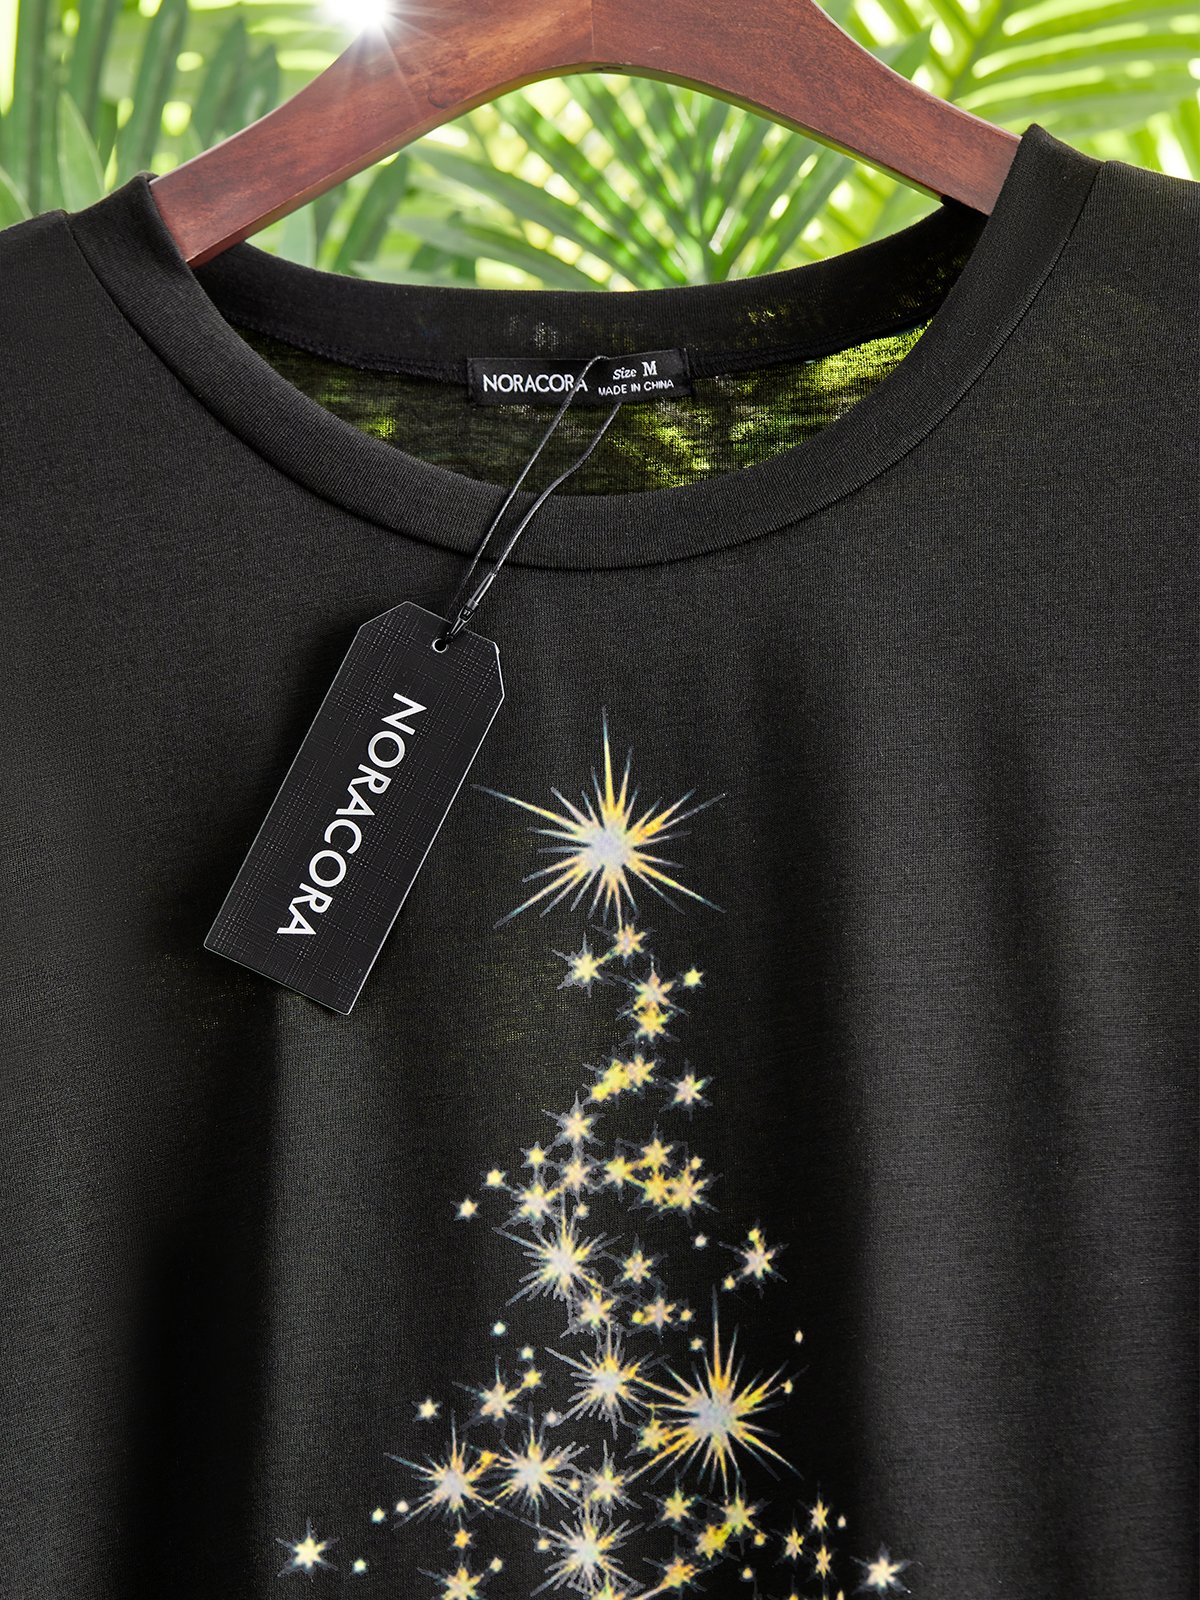 Weihnachtsbaum Rundhals T-Shirt